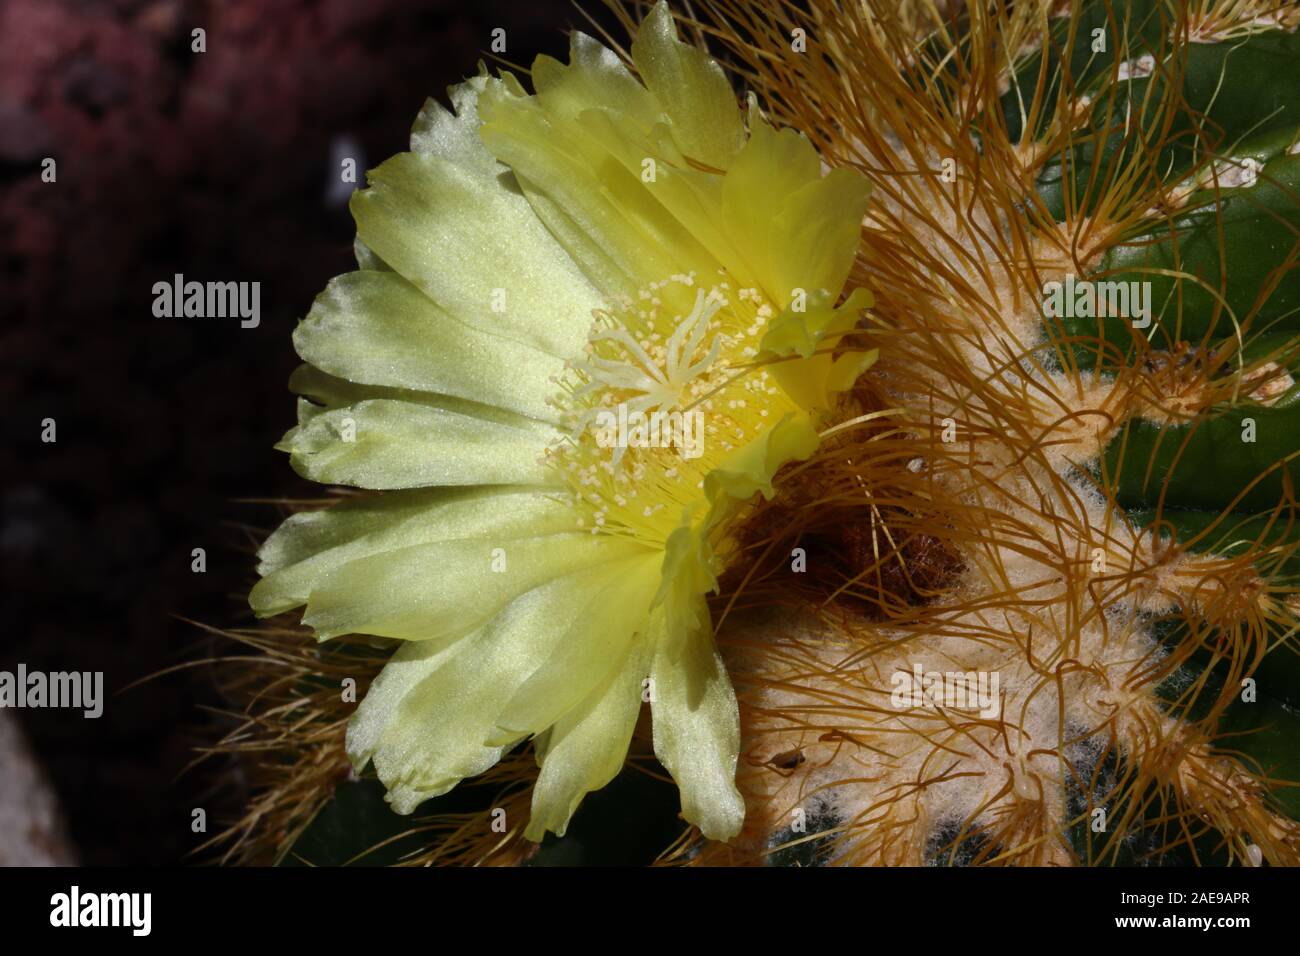 Parodia warsii ist ein Kurzsäulig Kaktus in der Regel solitär. Diese Sorte produziert große gelbe Blüten mit einem satin Sheen um die Krone der Anlage. Stockfoto